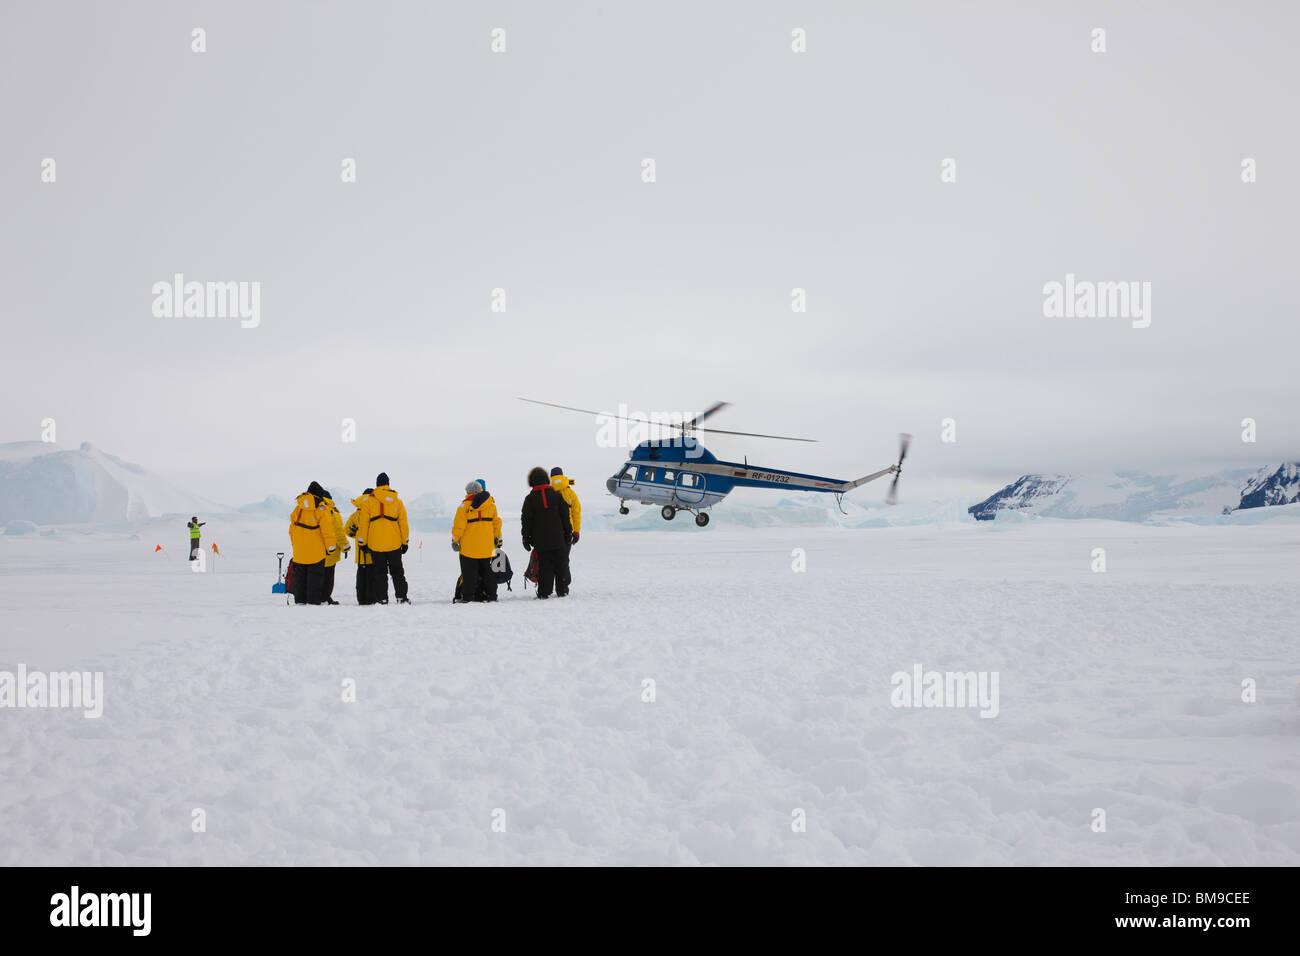 Hélicoptère à l'atterrissage sur la glace et de la neige en Antarctique, Snow Hill touristes portant des manteaux jaune en premier plan les glaciers en arrière-plan un ciel couvert Banque D'Images